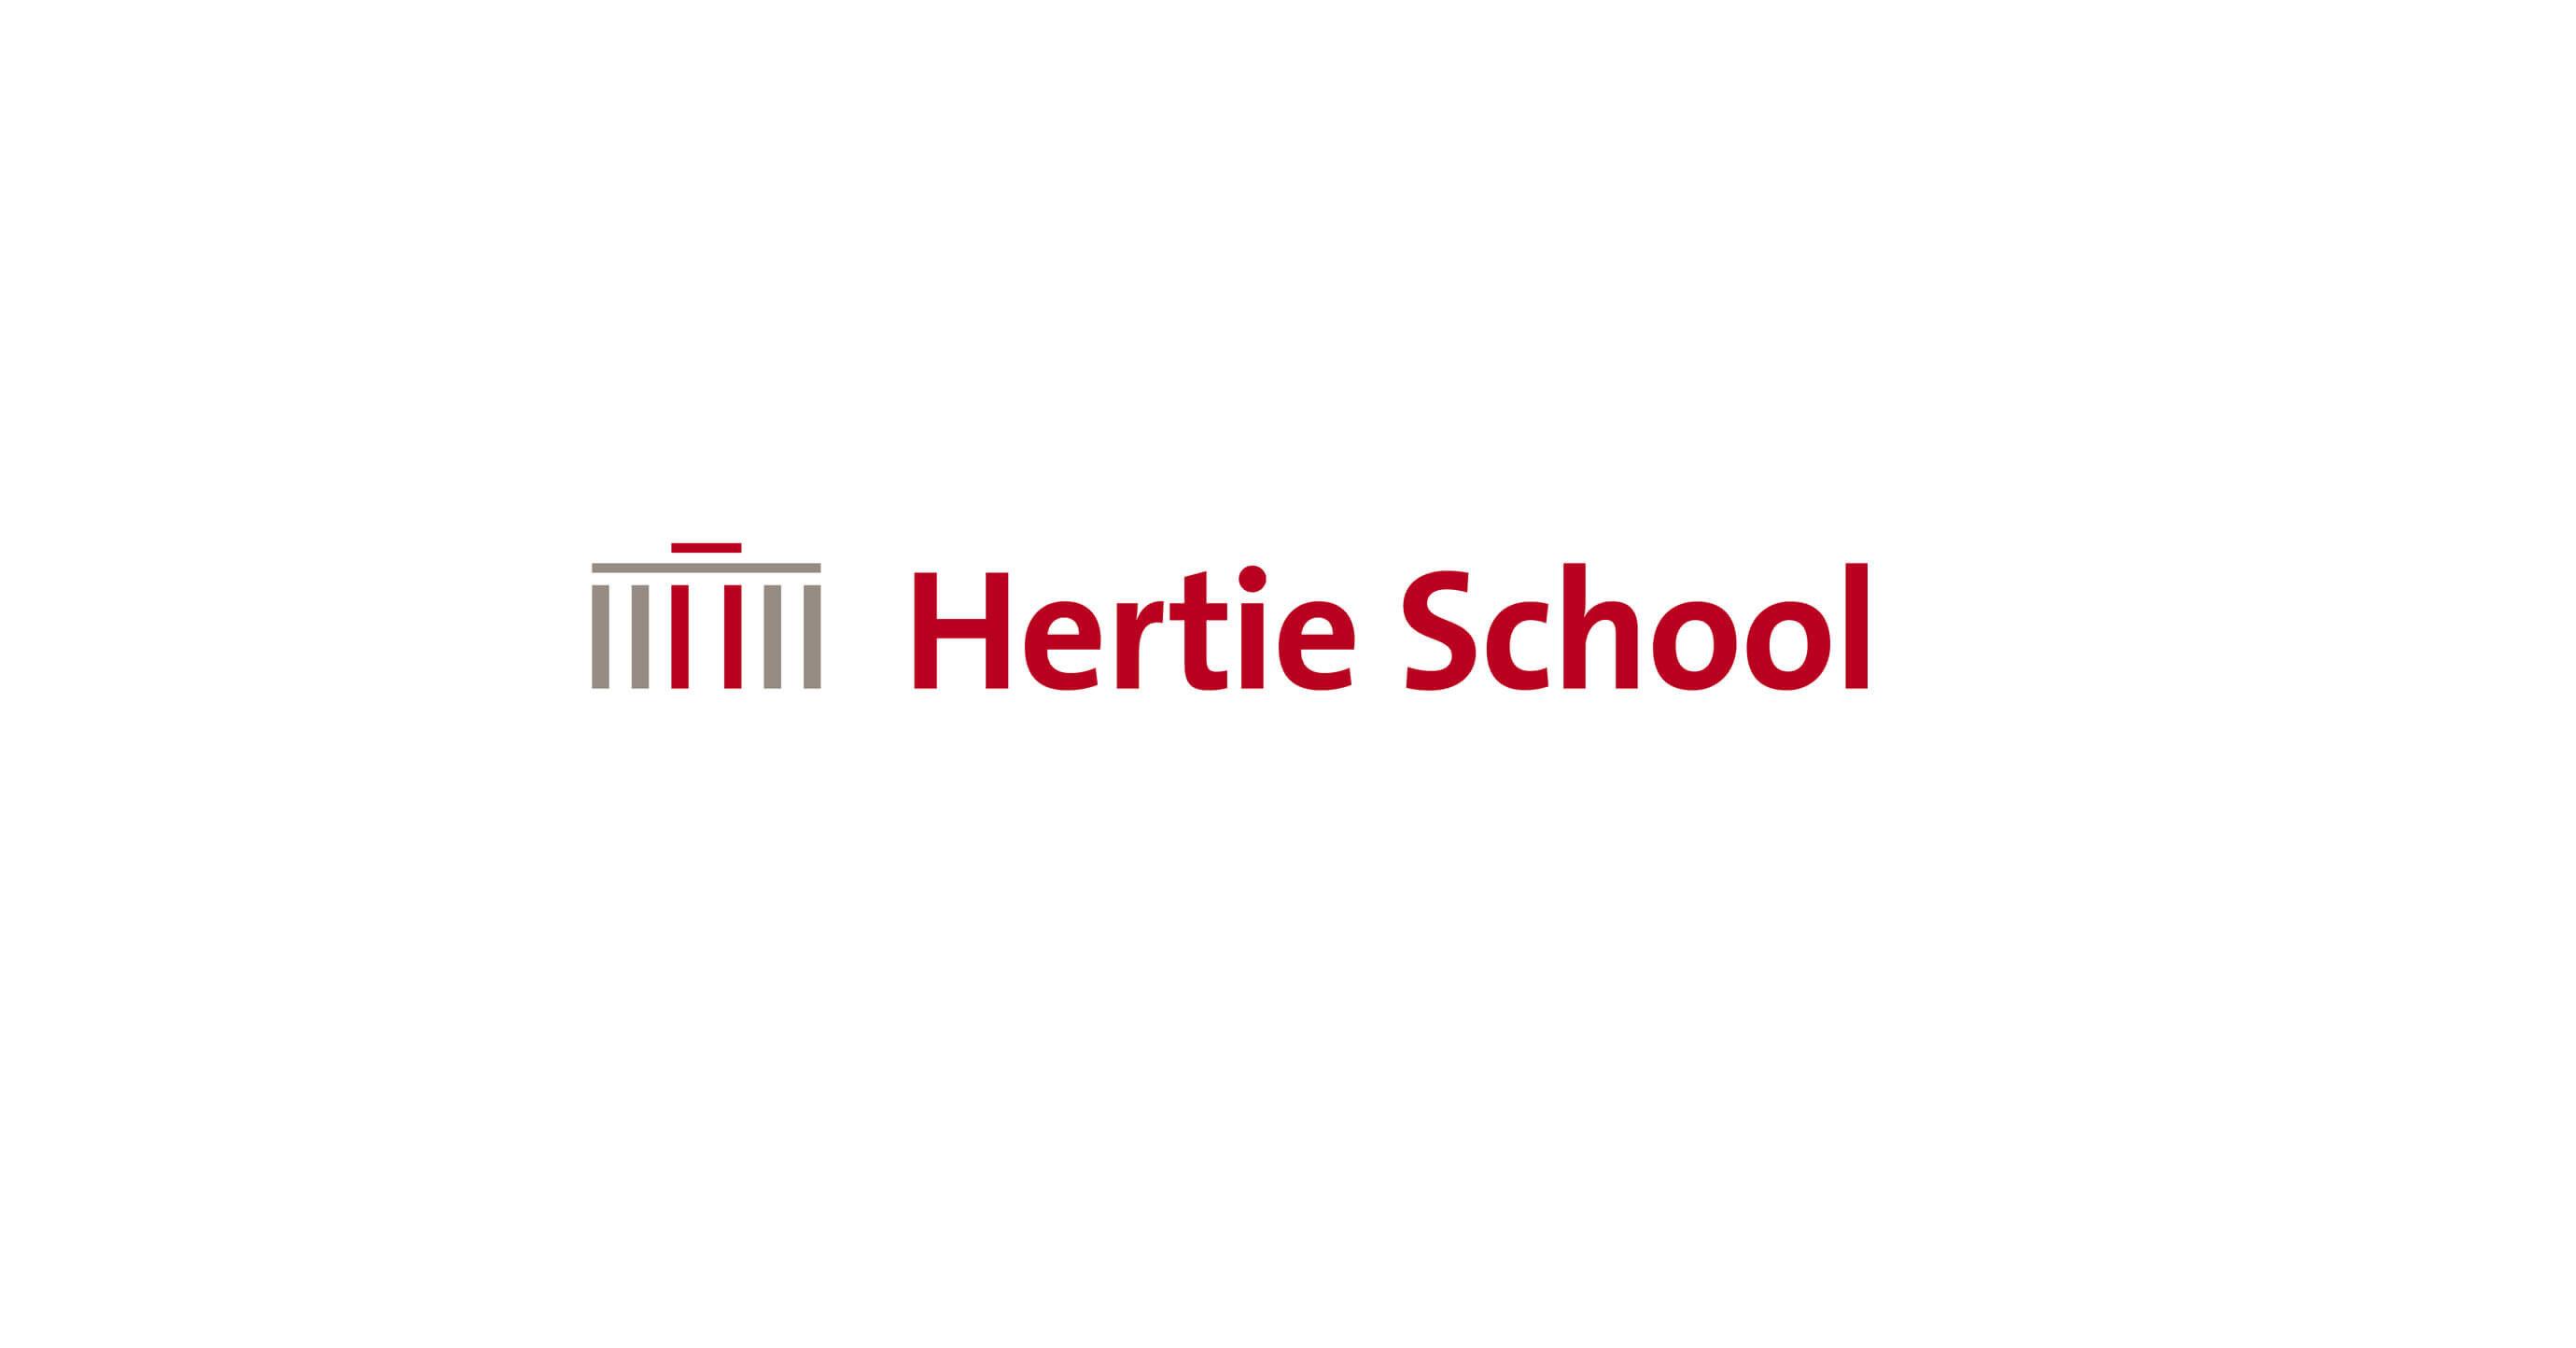 Hertie School logo